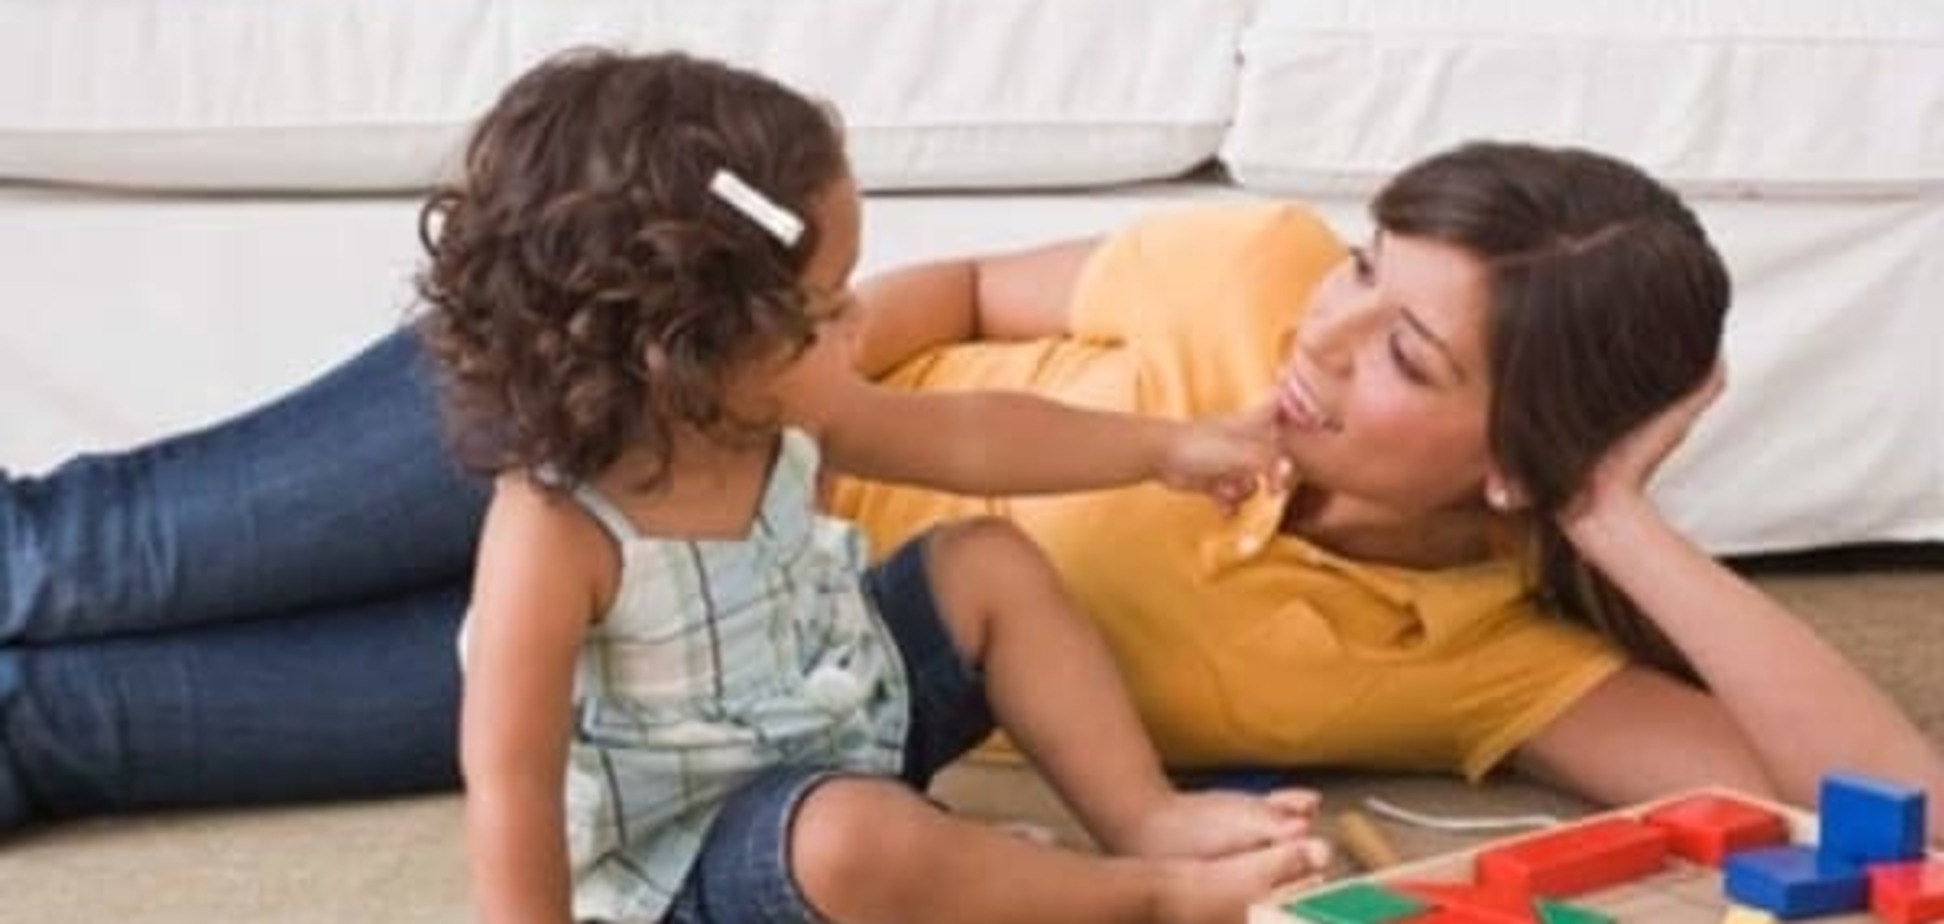 Ребенок не говорит? Развитие речи от 1 до 3 лет: как заниматься